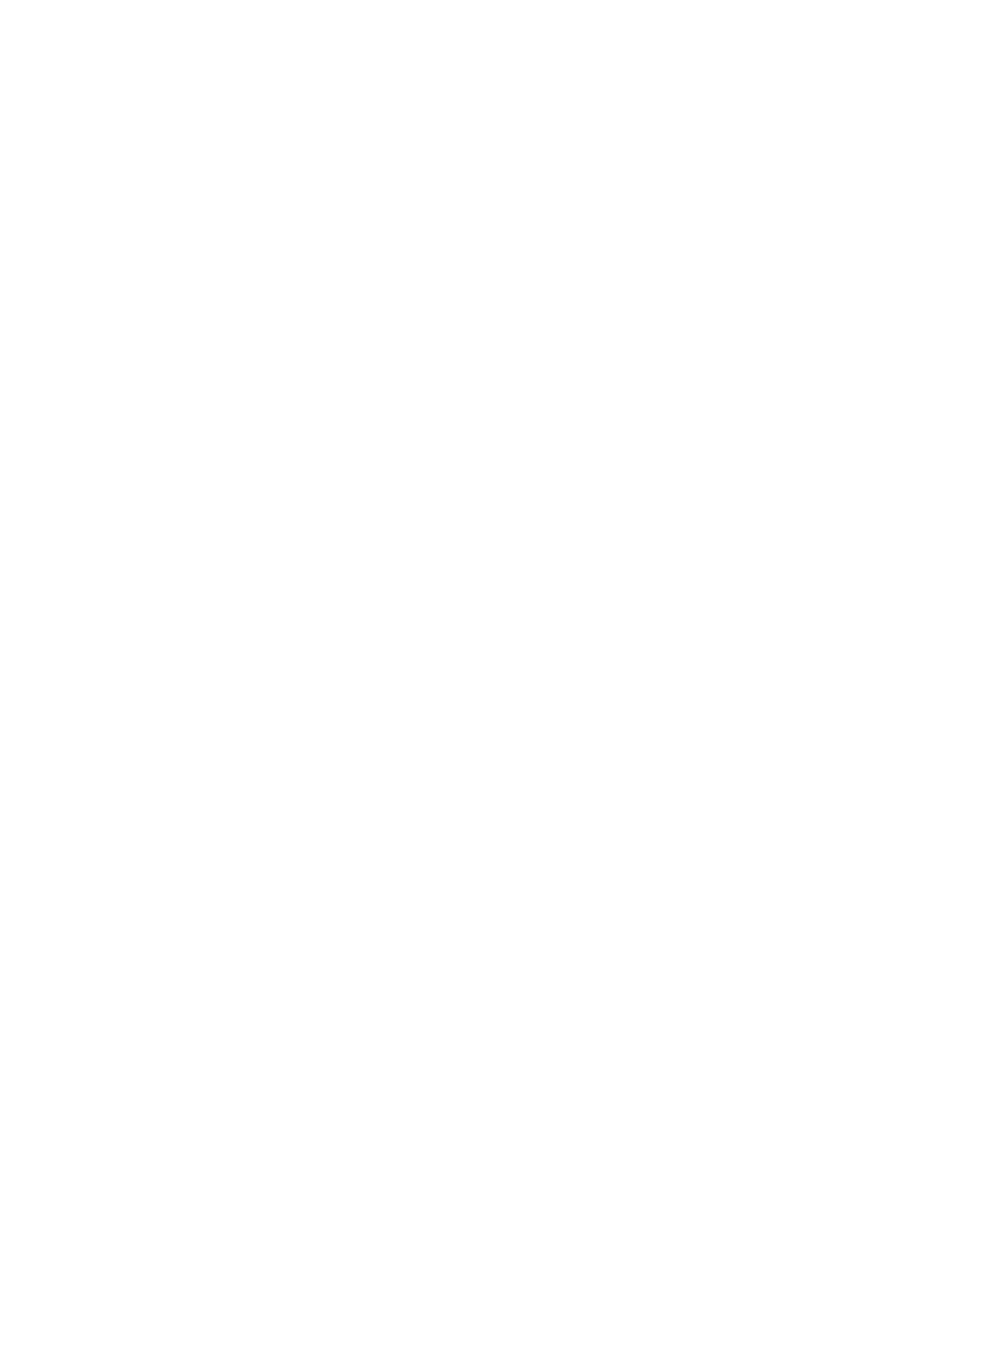 Haus logo in white